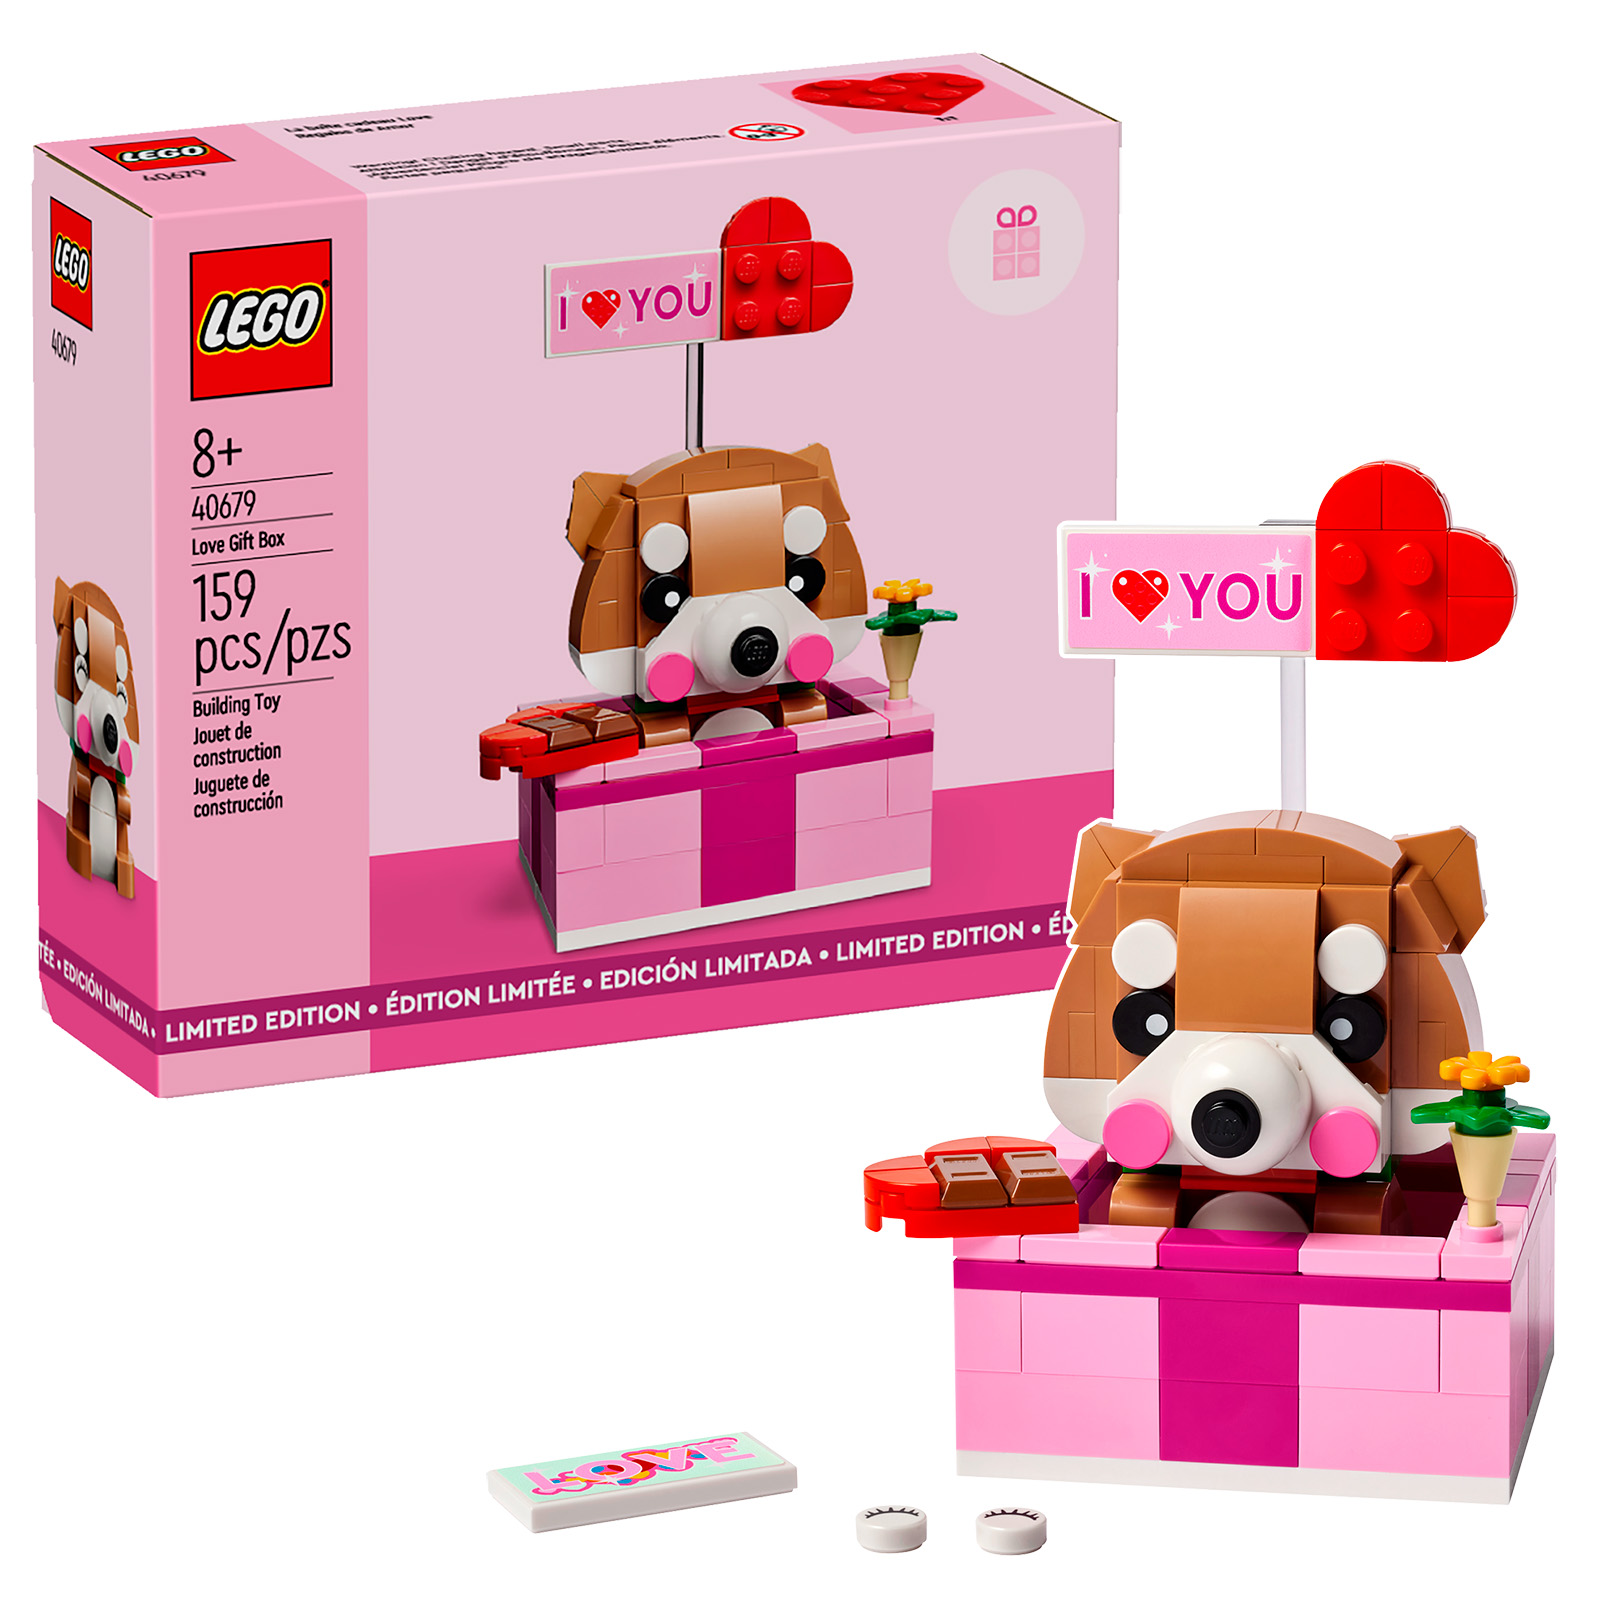 LEGO 40679 Love Gift Box le set promotionnel est en ligne sur le Shop